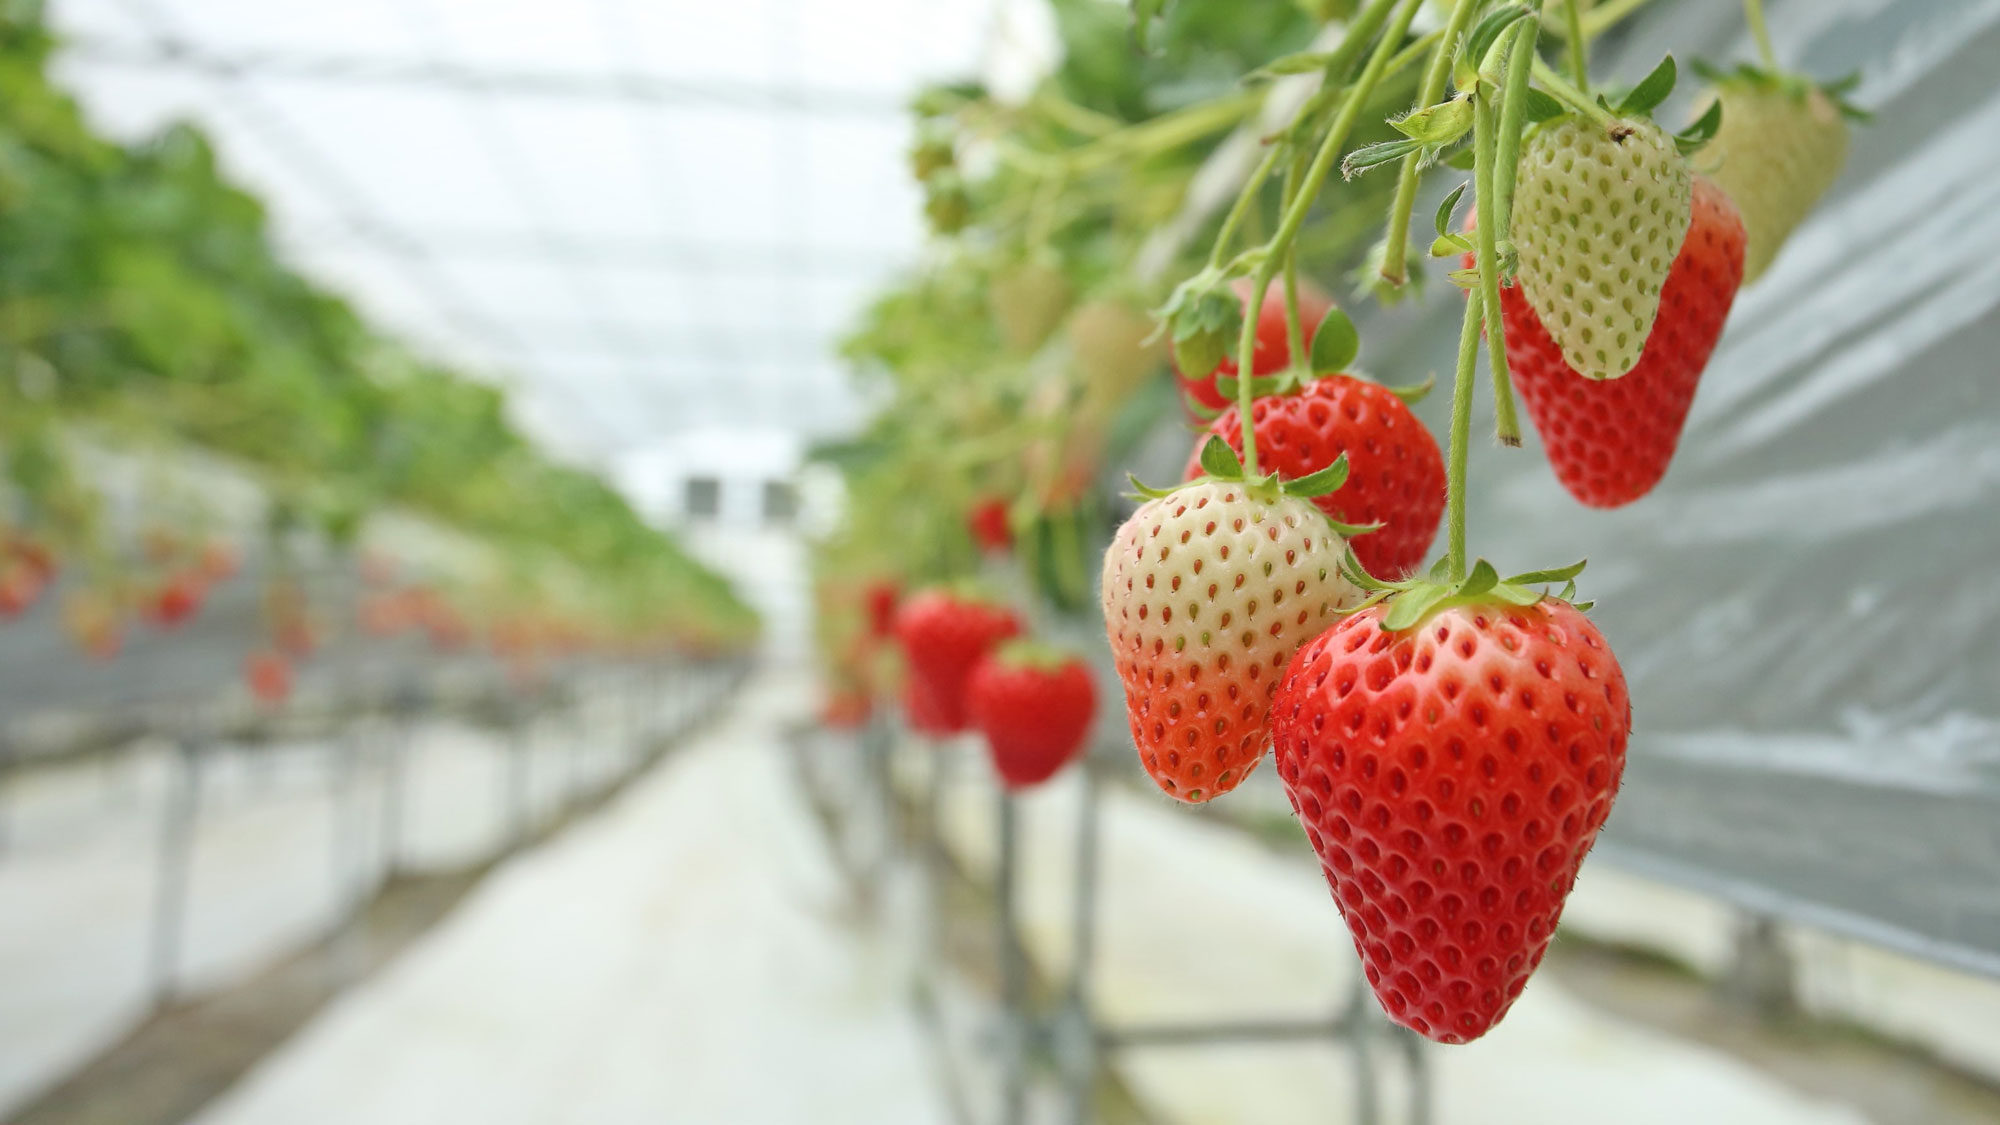 Omishima Strawberry Picking